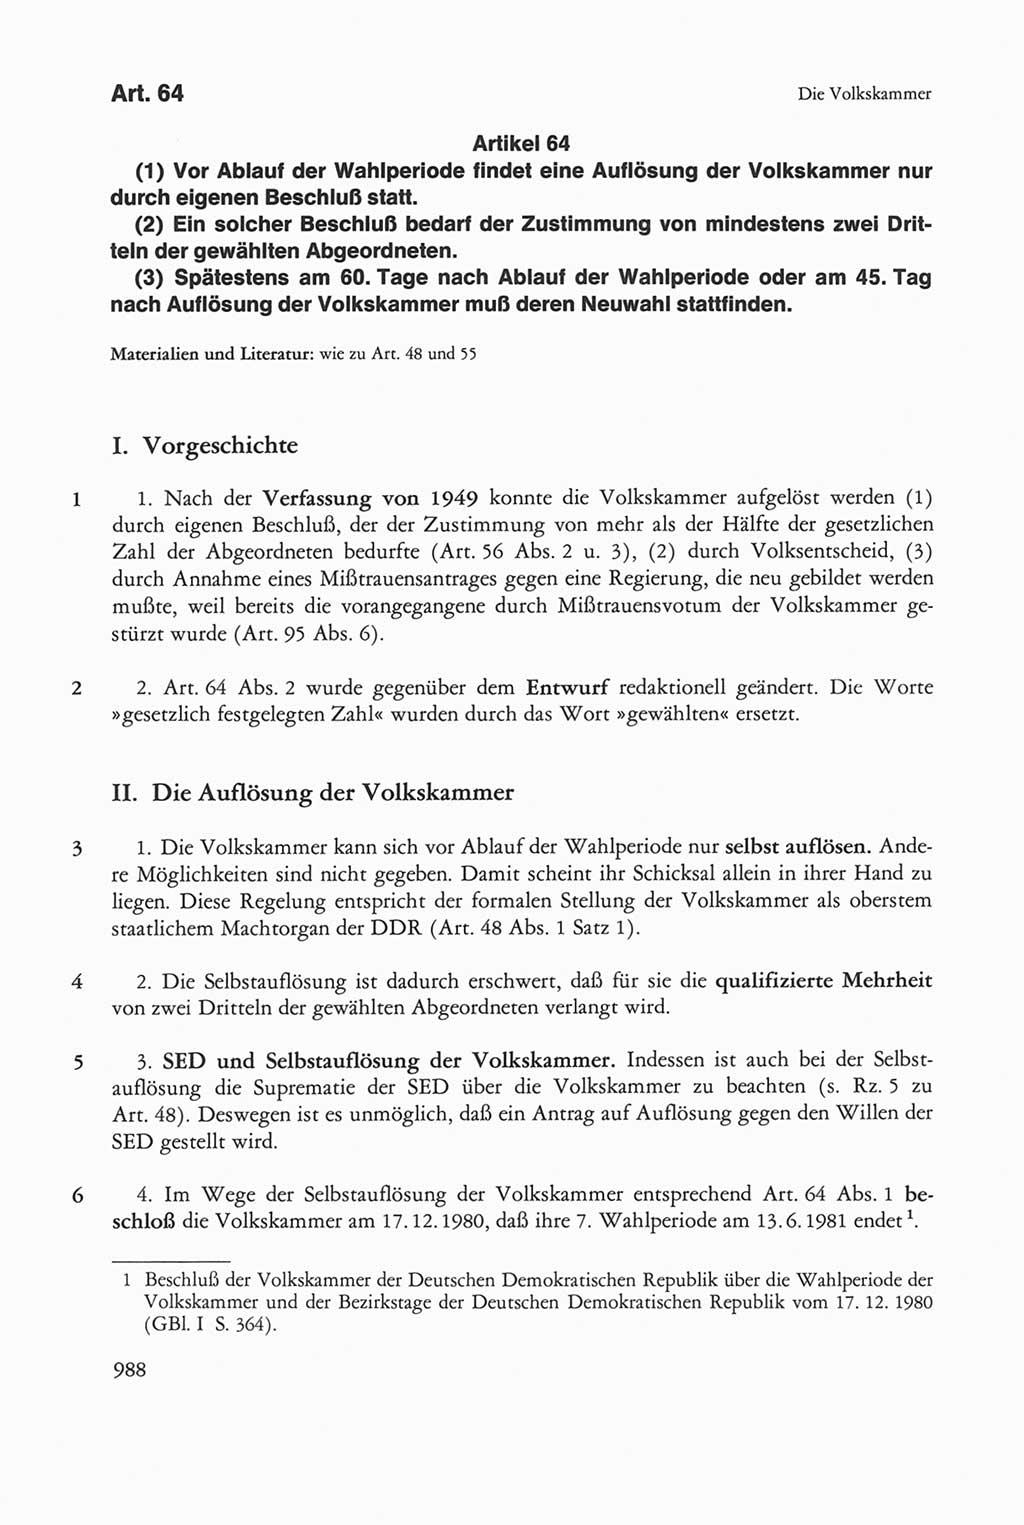 Die sozialistische Verfassung der Deutschen Demokratischen Republik (DDR), Kommentar 1982, Seite 988 (Soz. Verf. DDR Komm. 1982, S. 988)